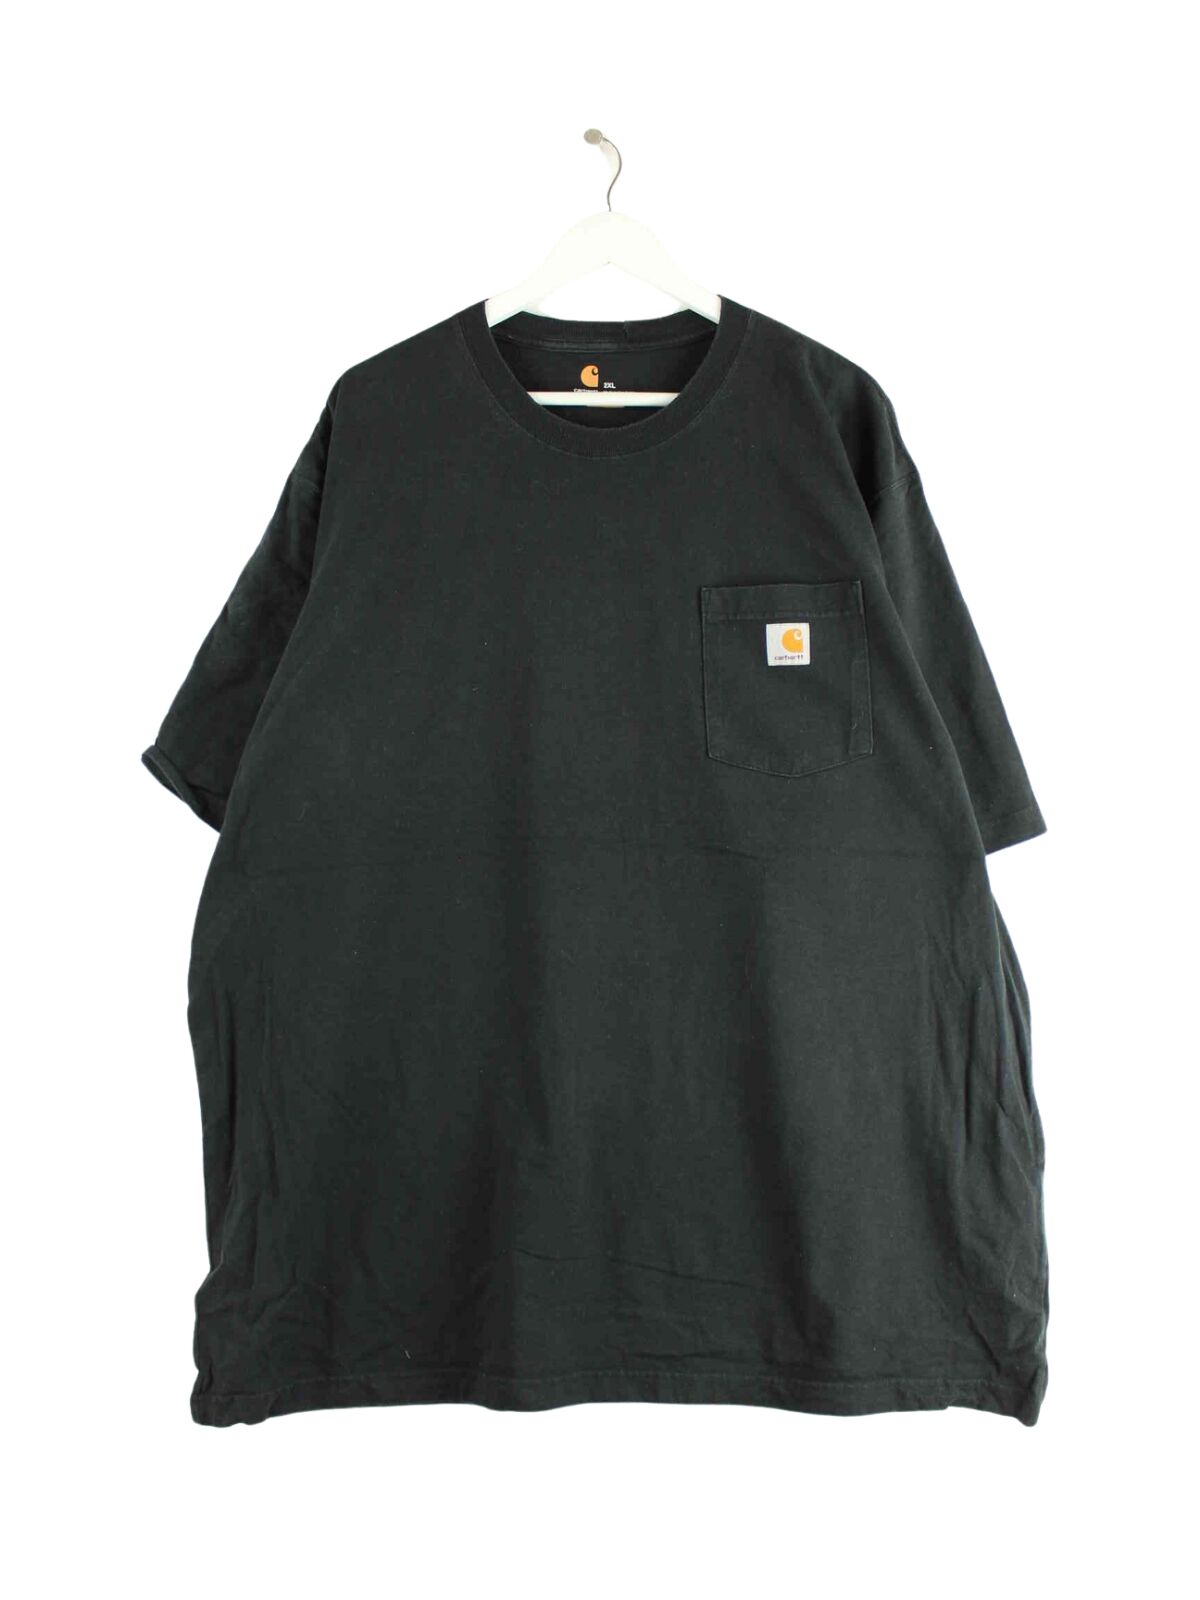 Carhartt Basic T-Shirt Schwarz 3XL (front image)